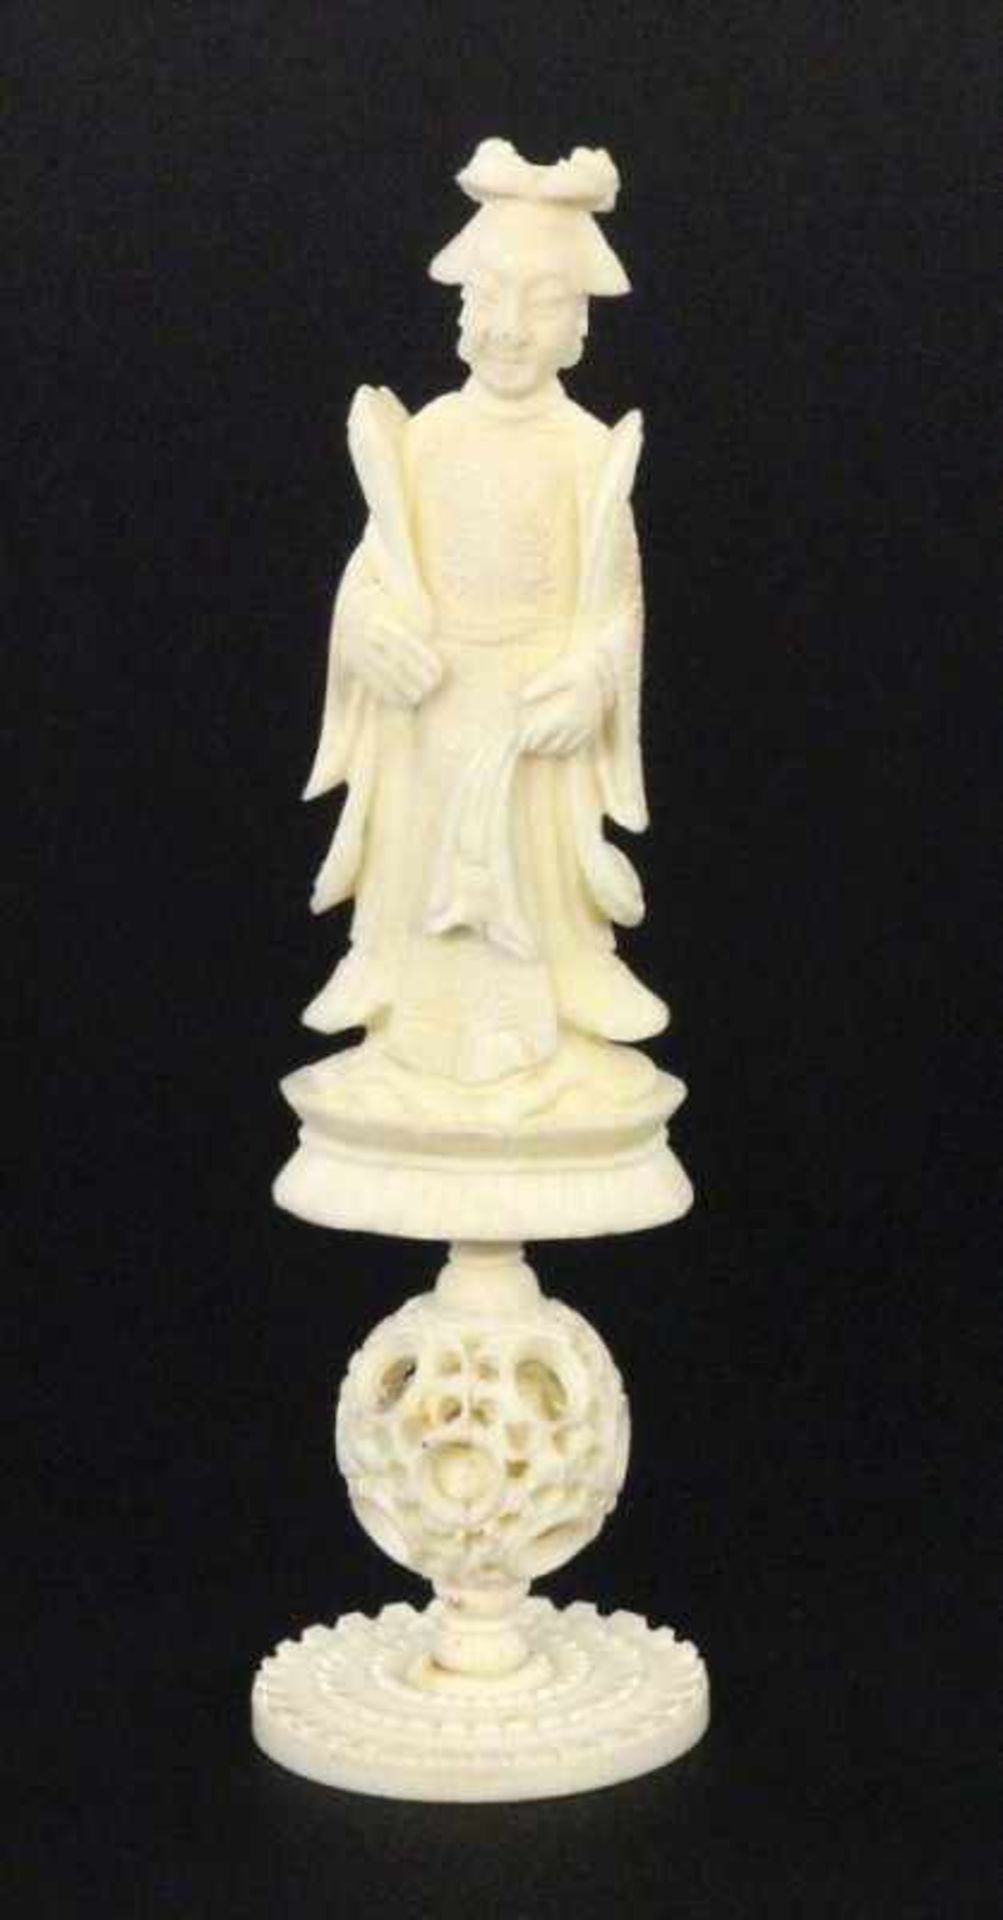 CHINESISCHE KÖNIGIN AUF WUNDERKUGELum 1920 Schachfigur. Elfenbein, geschnitzt. H.13cm Kein Versand